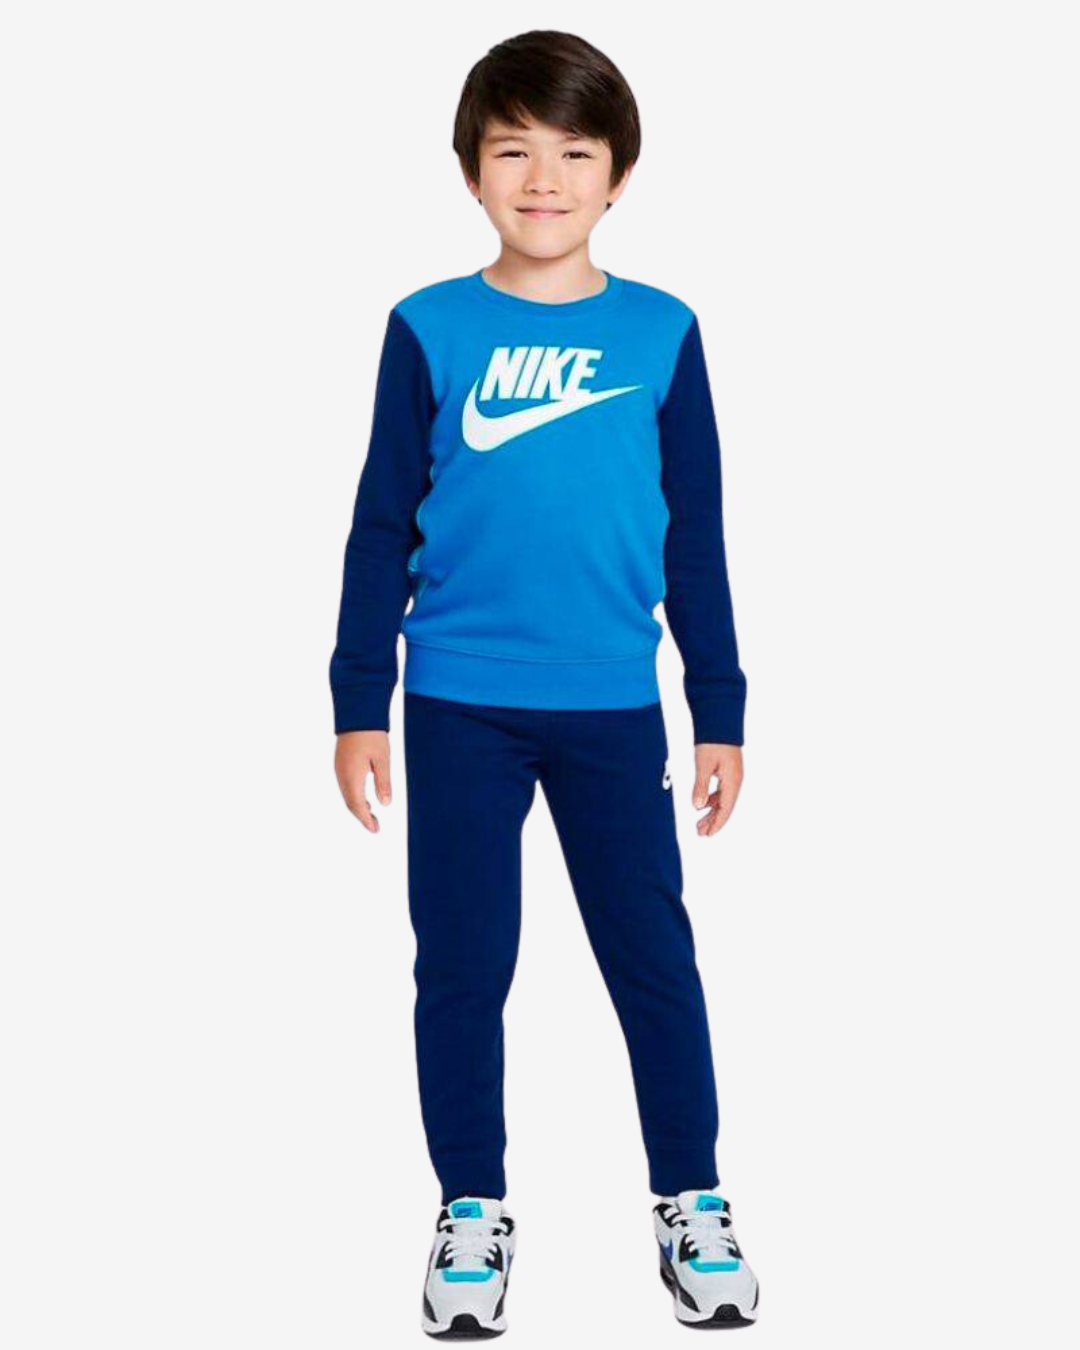 Nike Sportswear Kids' Tracksuit - Blue/White